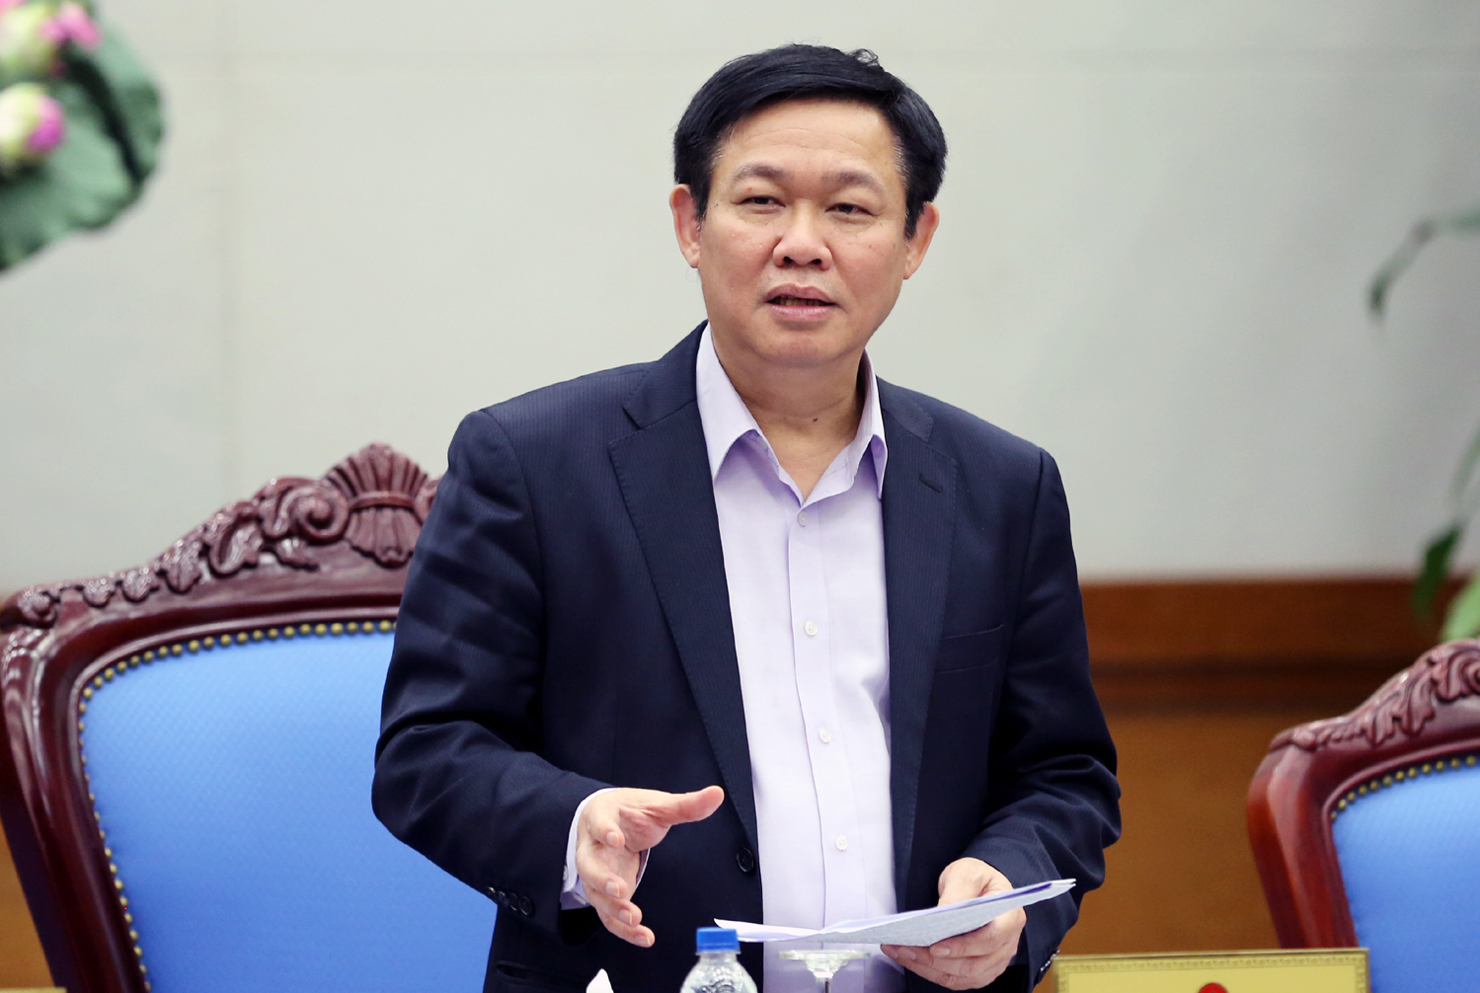 Phó Thủ tướng Vương Đình Huệ chỉ đạo tại cuộc họp. Nguồn: Báo Chính phủ